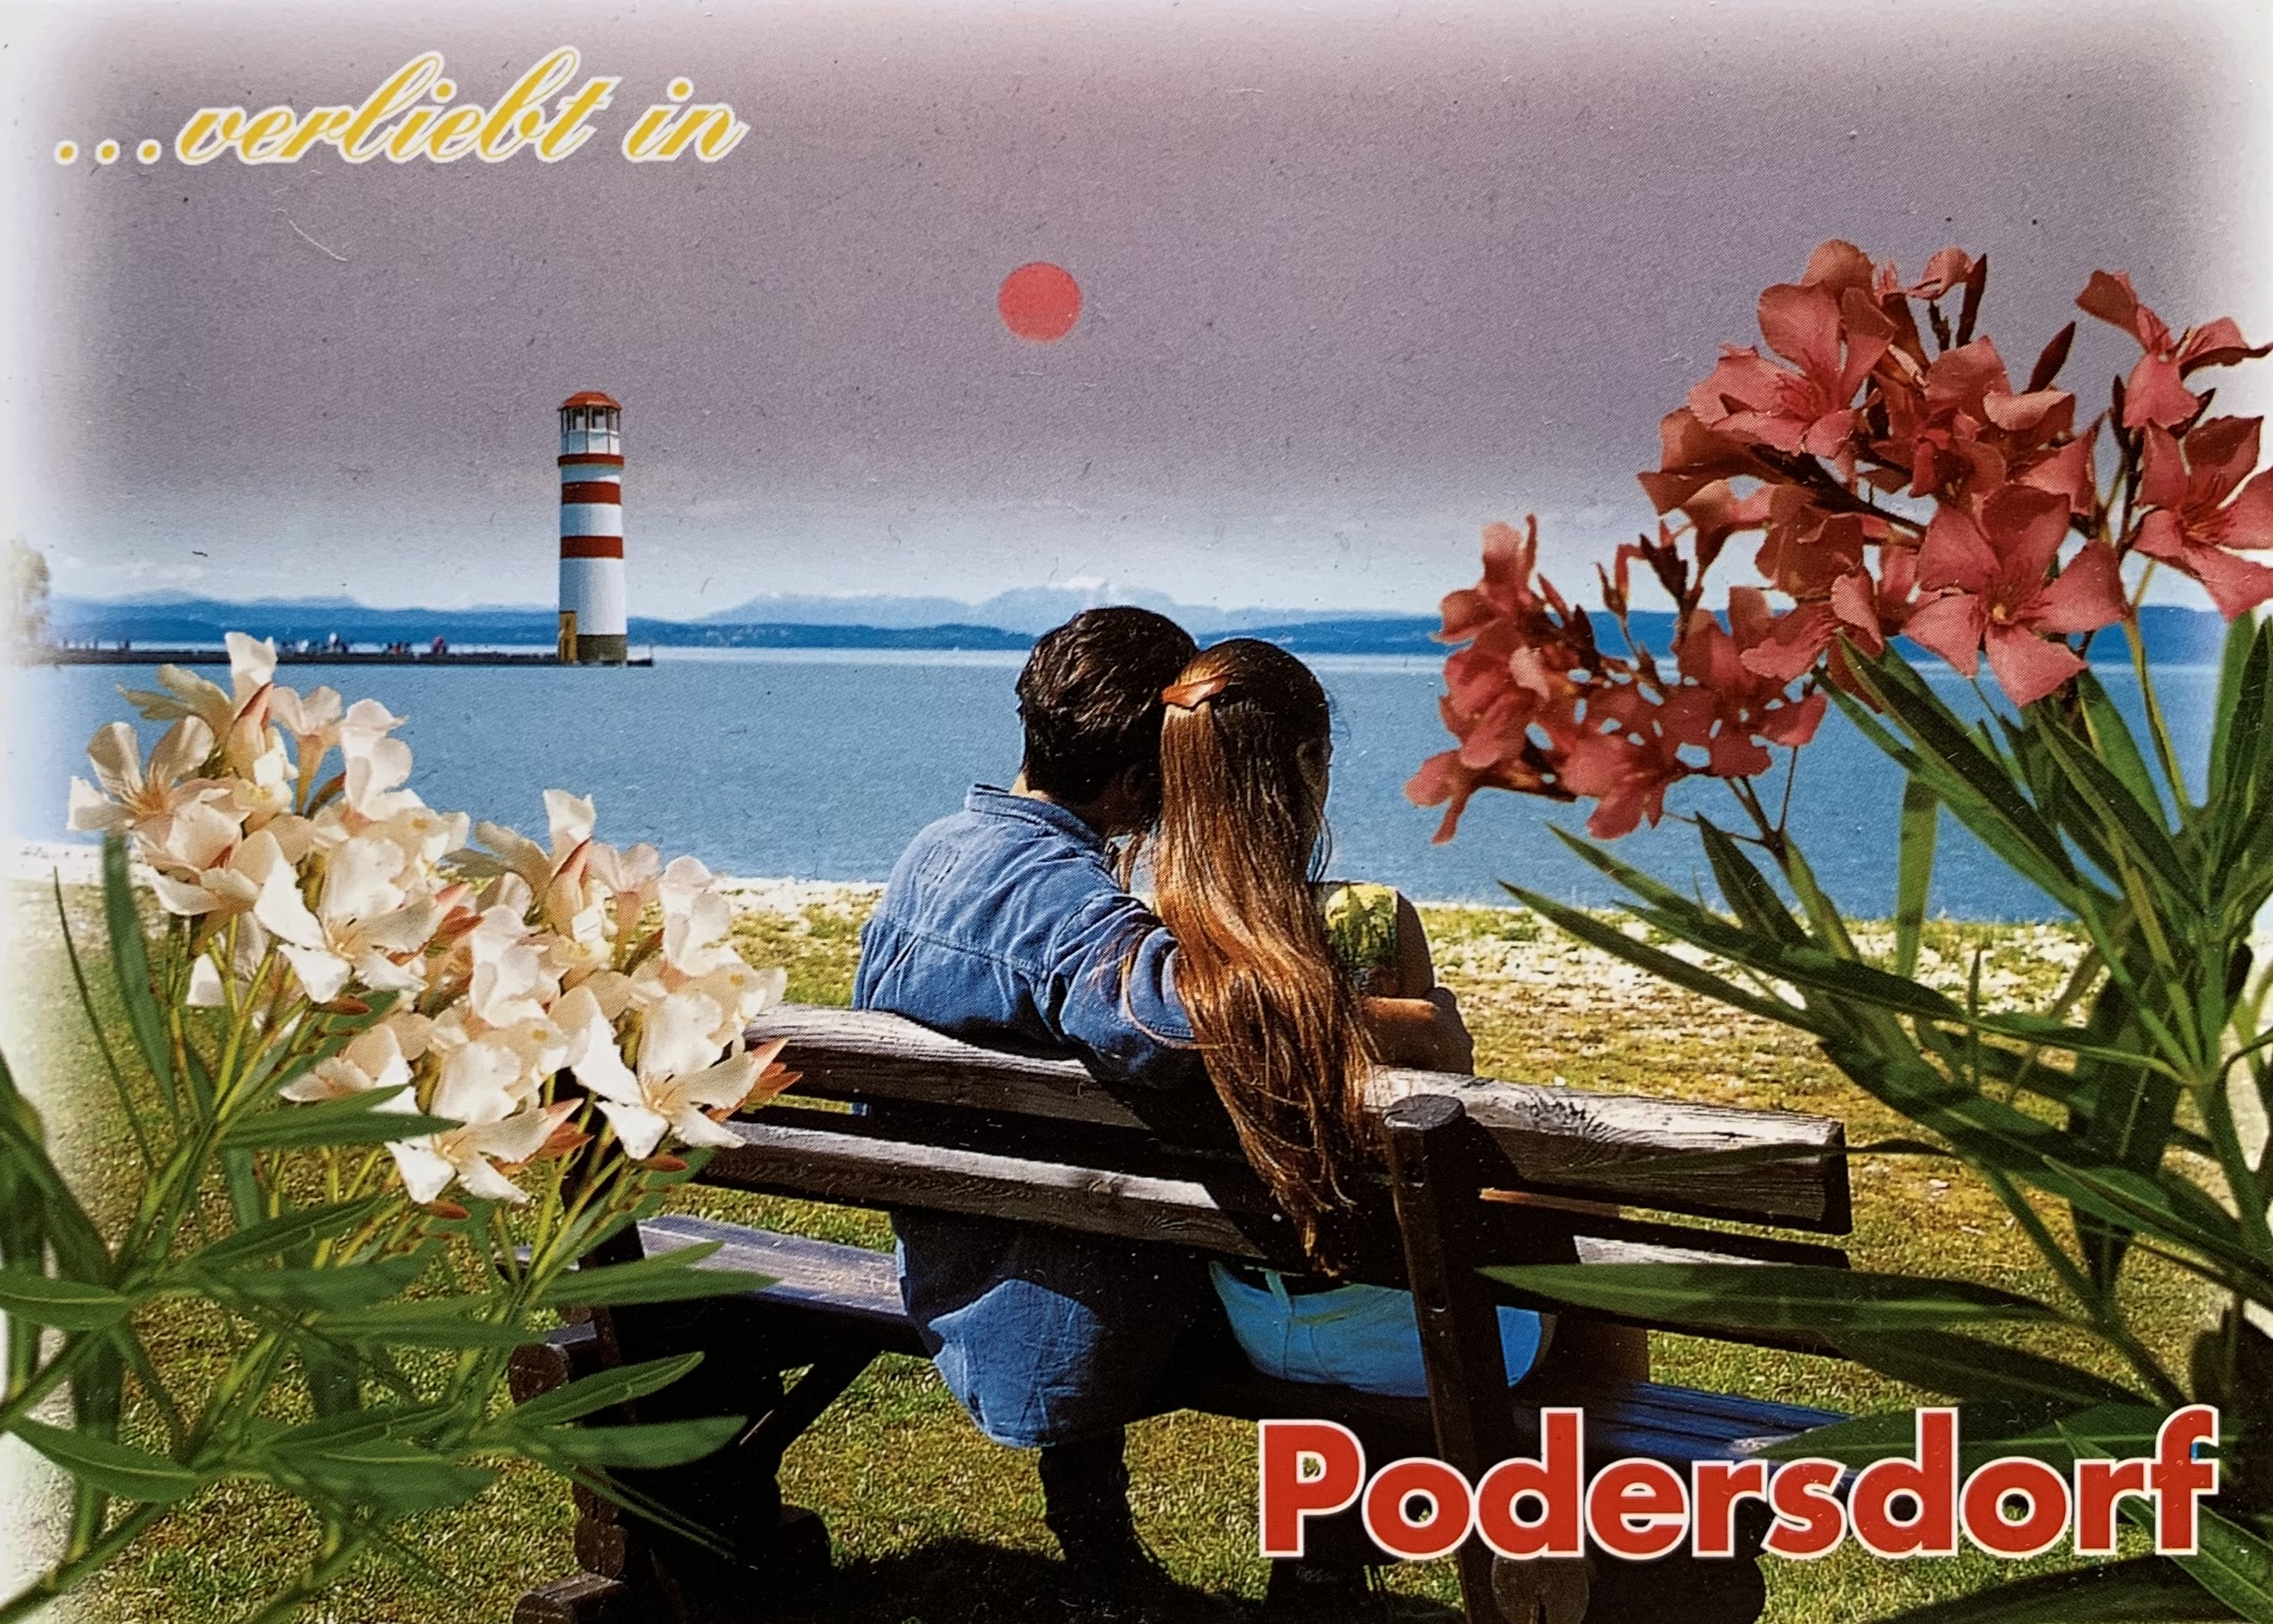 AK - Podersdorf 01-7141-32